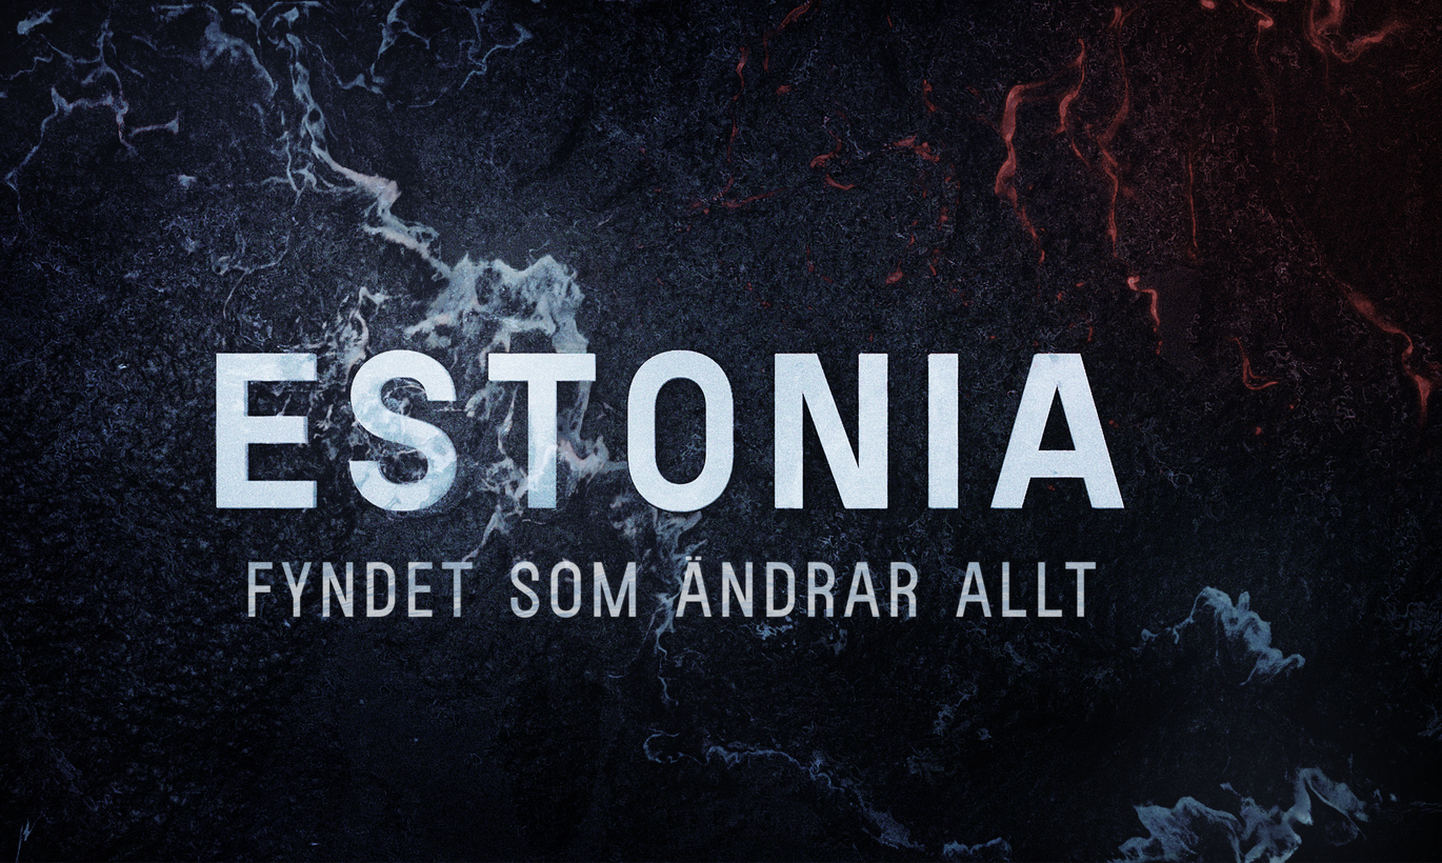 Рекламный плакат документального фильма о гибели парома "Эстония" в Швеции.